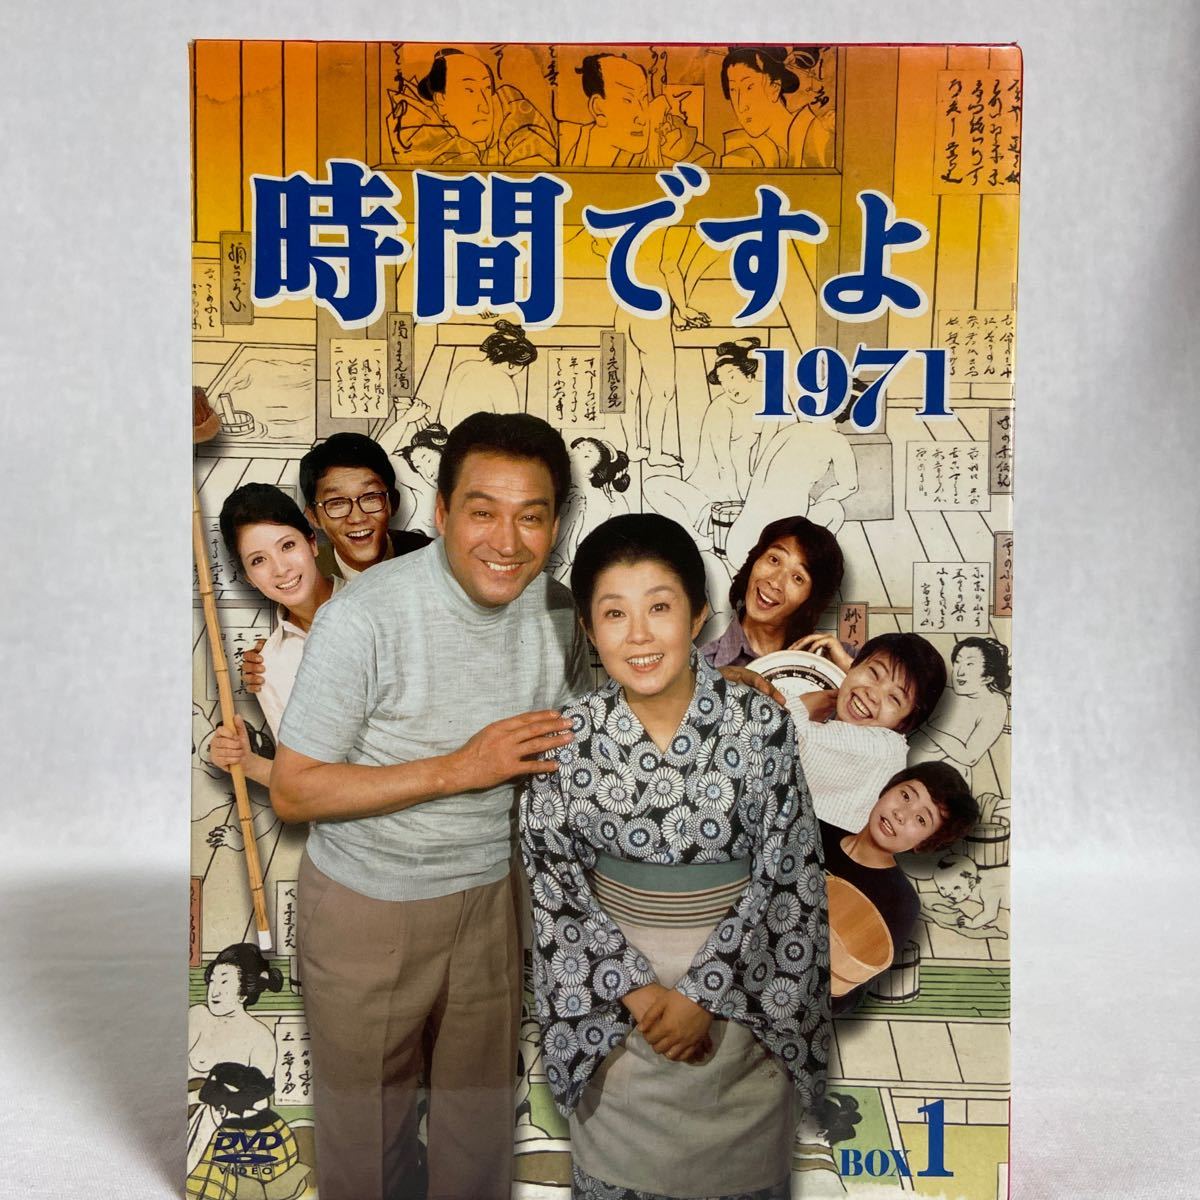 TBS DVD BOX 1 時間ですよ 1971 昭和の名ドラマ 森光子 船越英二 松山英太郎 樹木希林 昭和レトロ